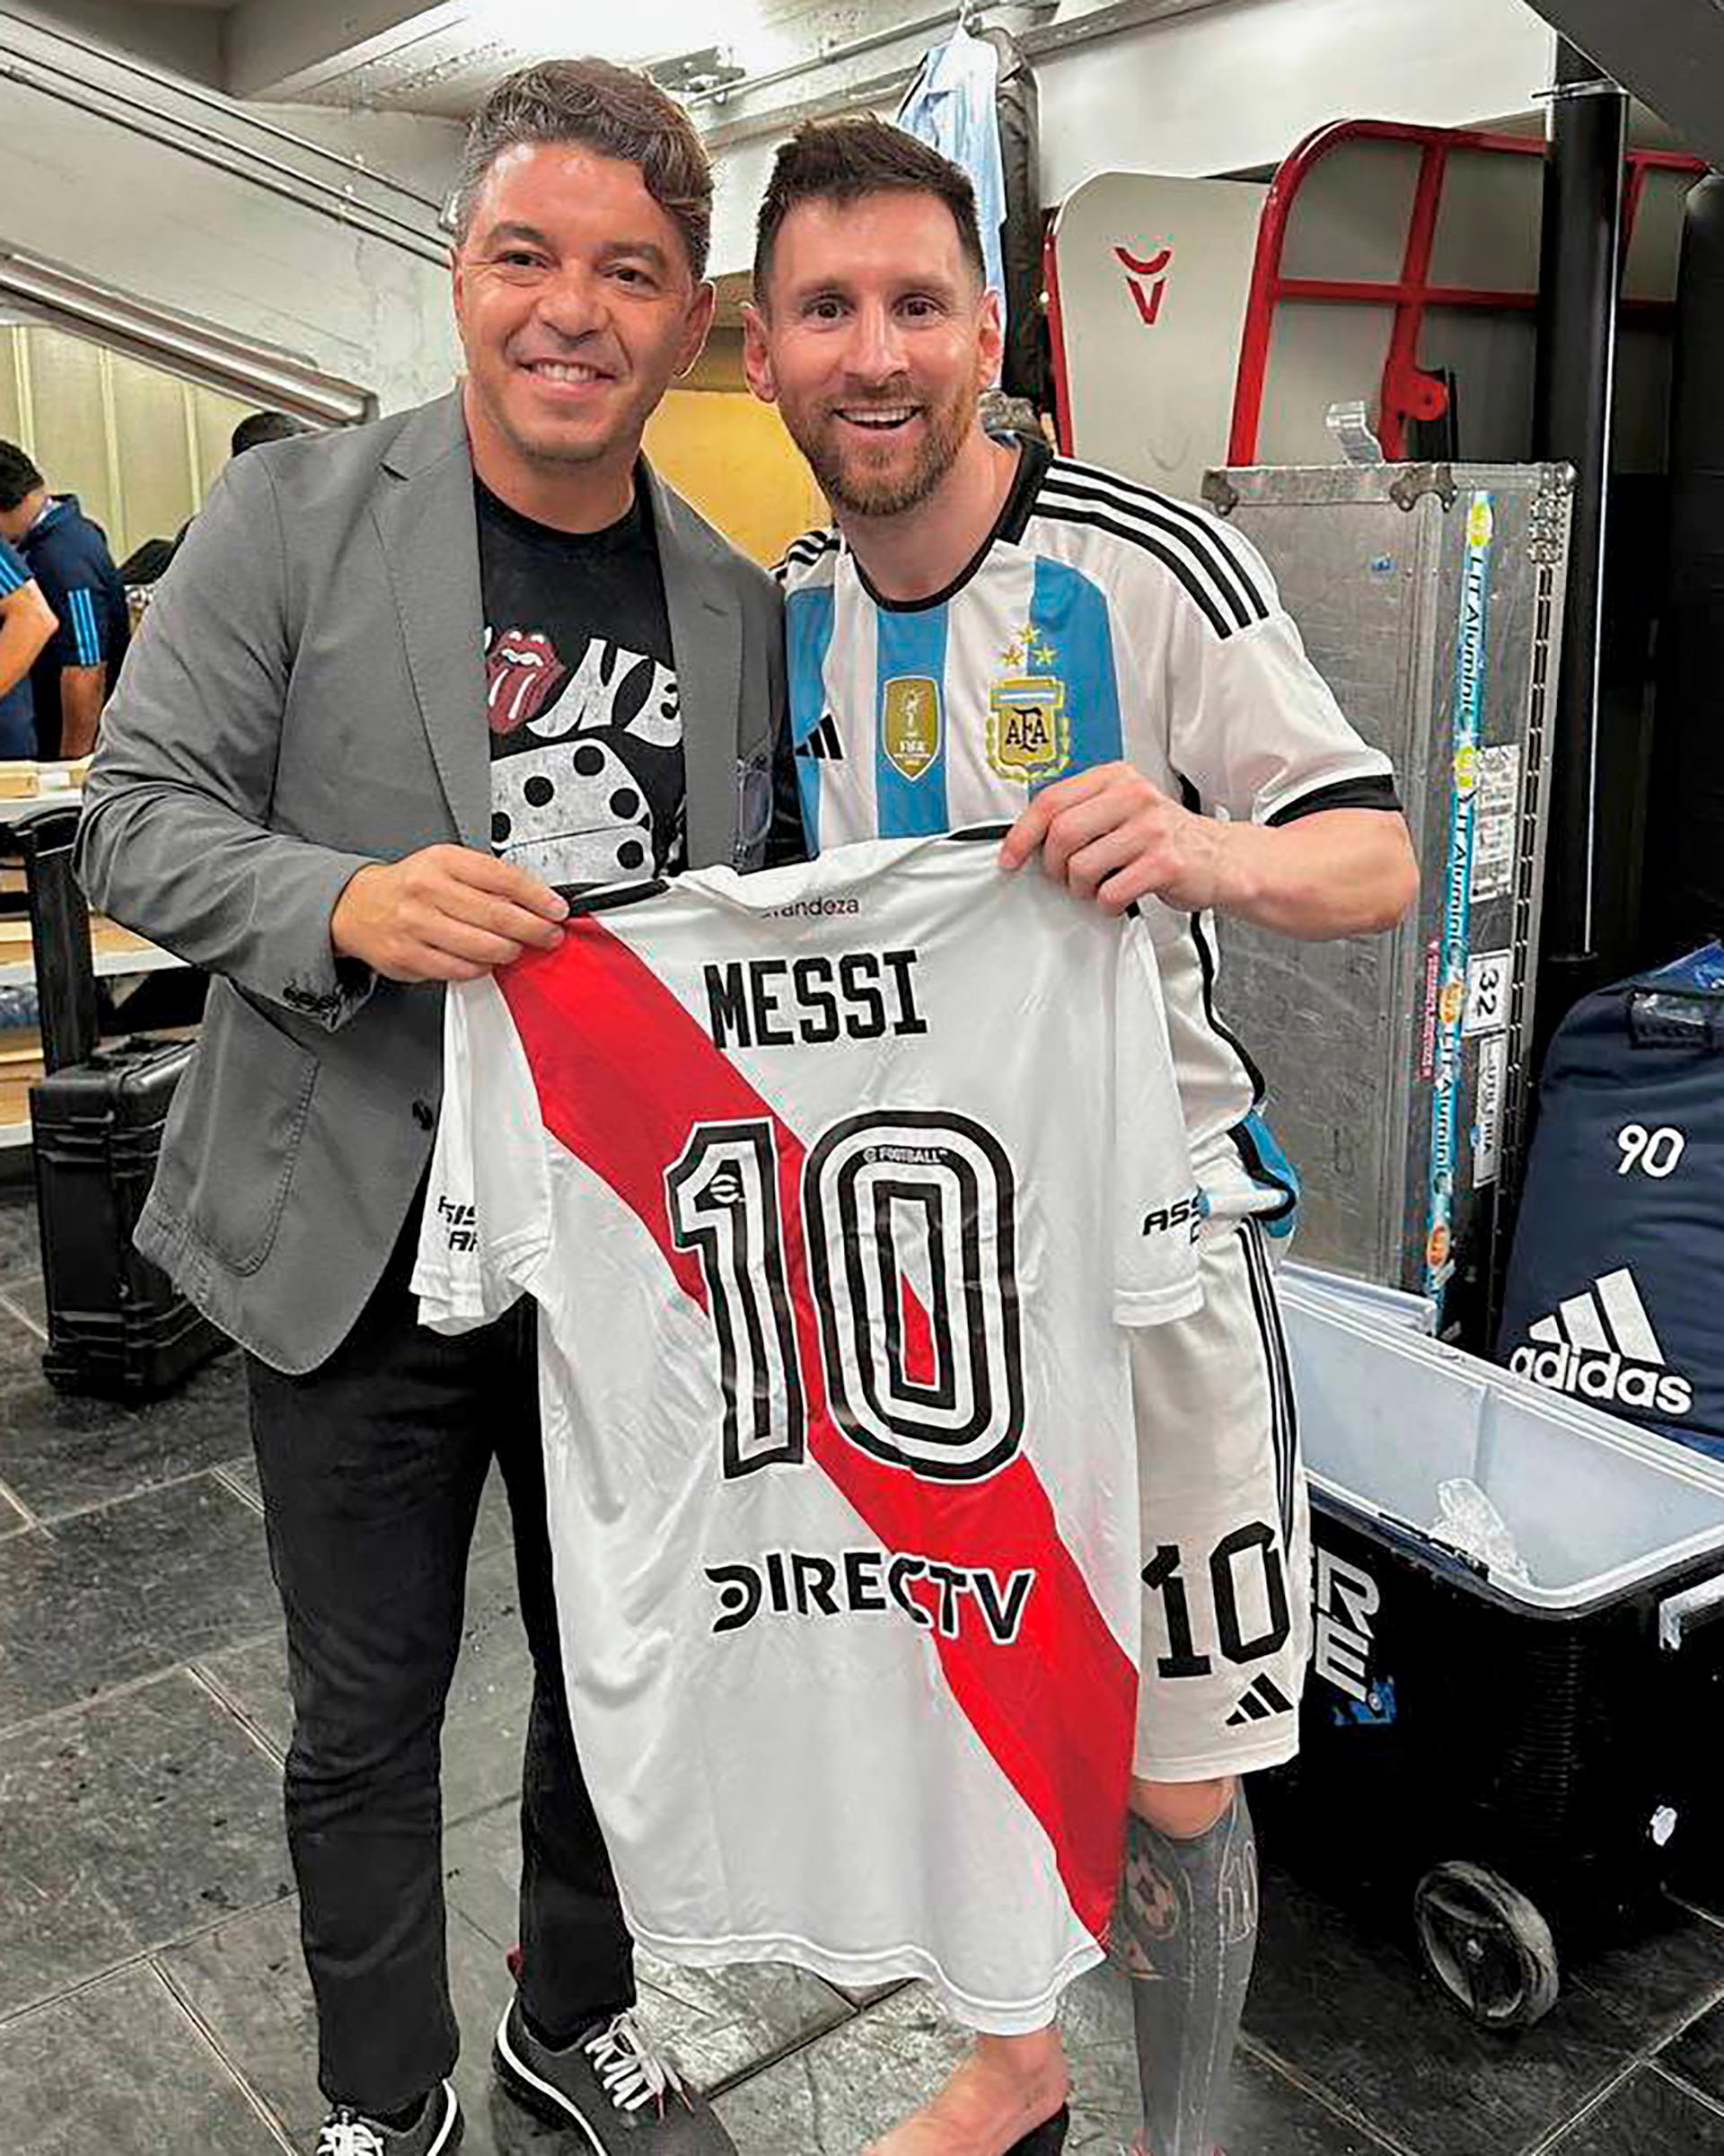 Una imagen soñada por los hinchas de River Plate: Gallardo, Messi y la camiseta del Millonario